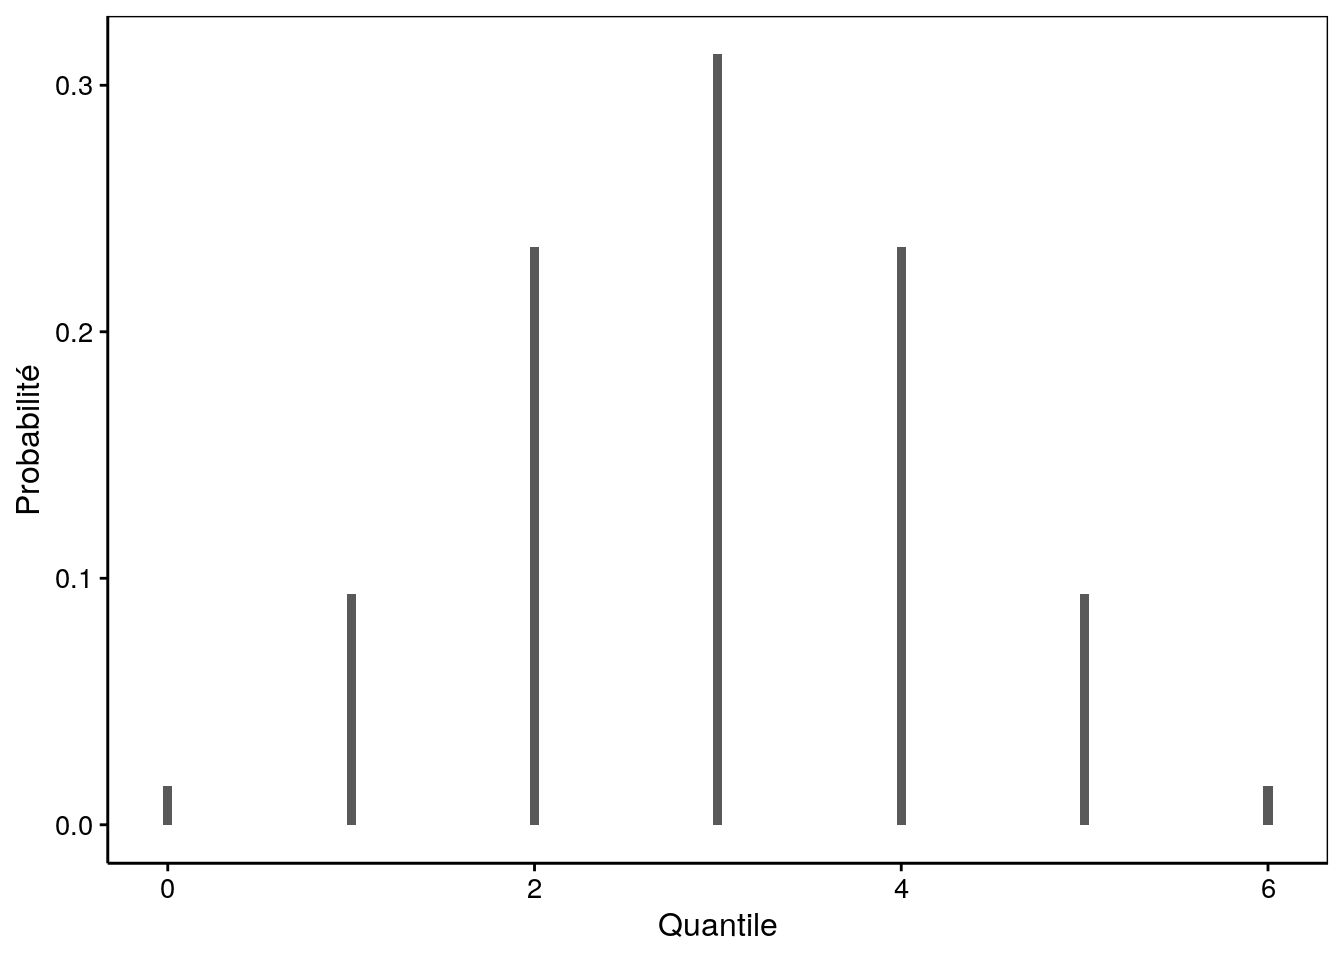 Probabilité d'avoir des garçons parmi une fratrie de 6 enfants (si le sexe ratio de 1:1).